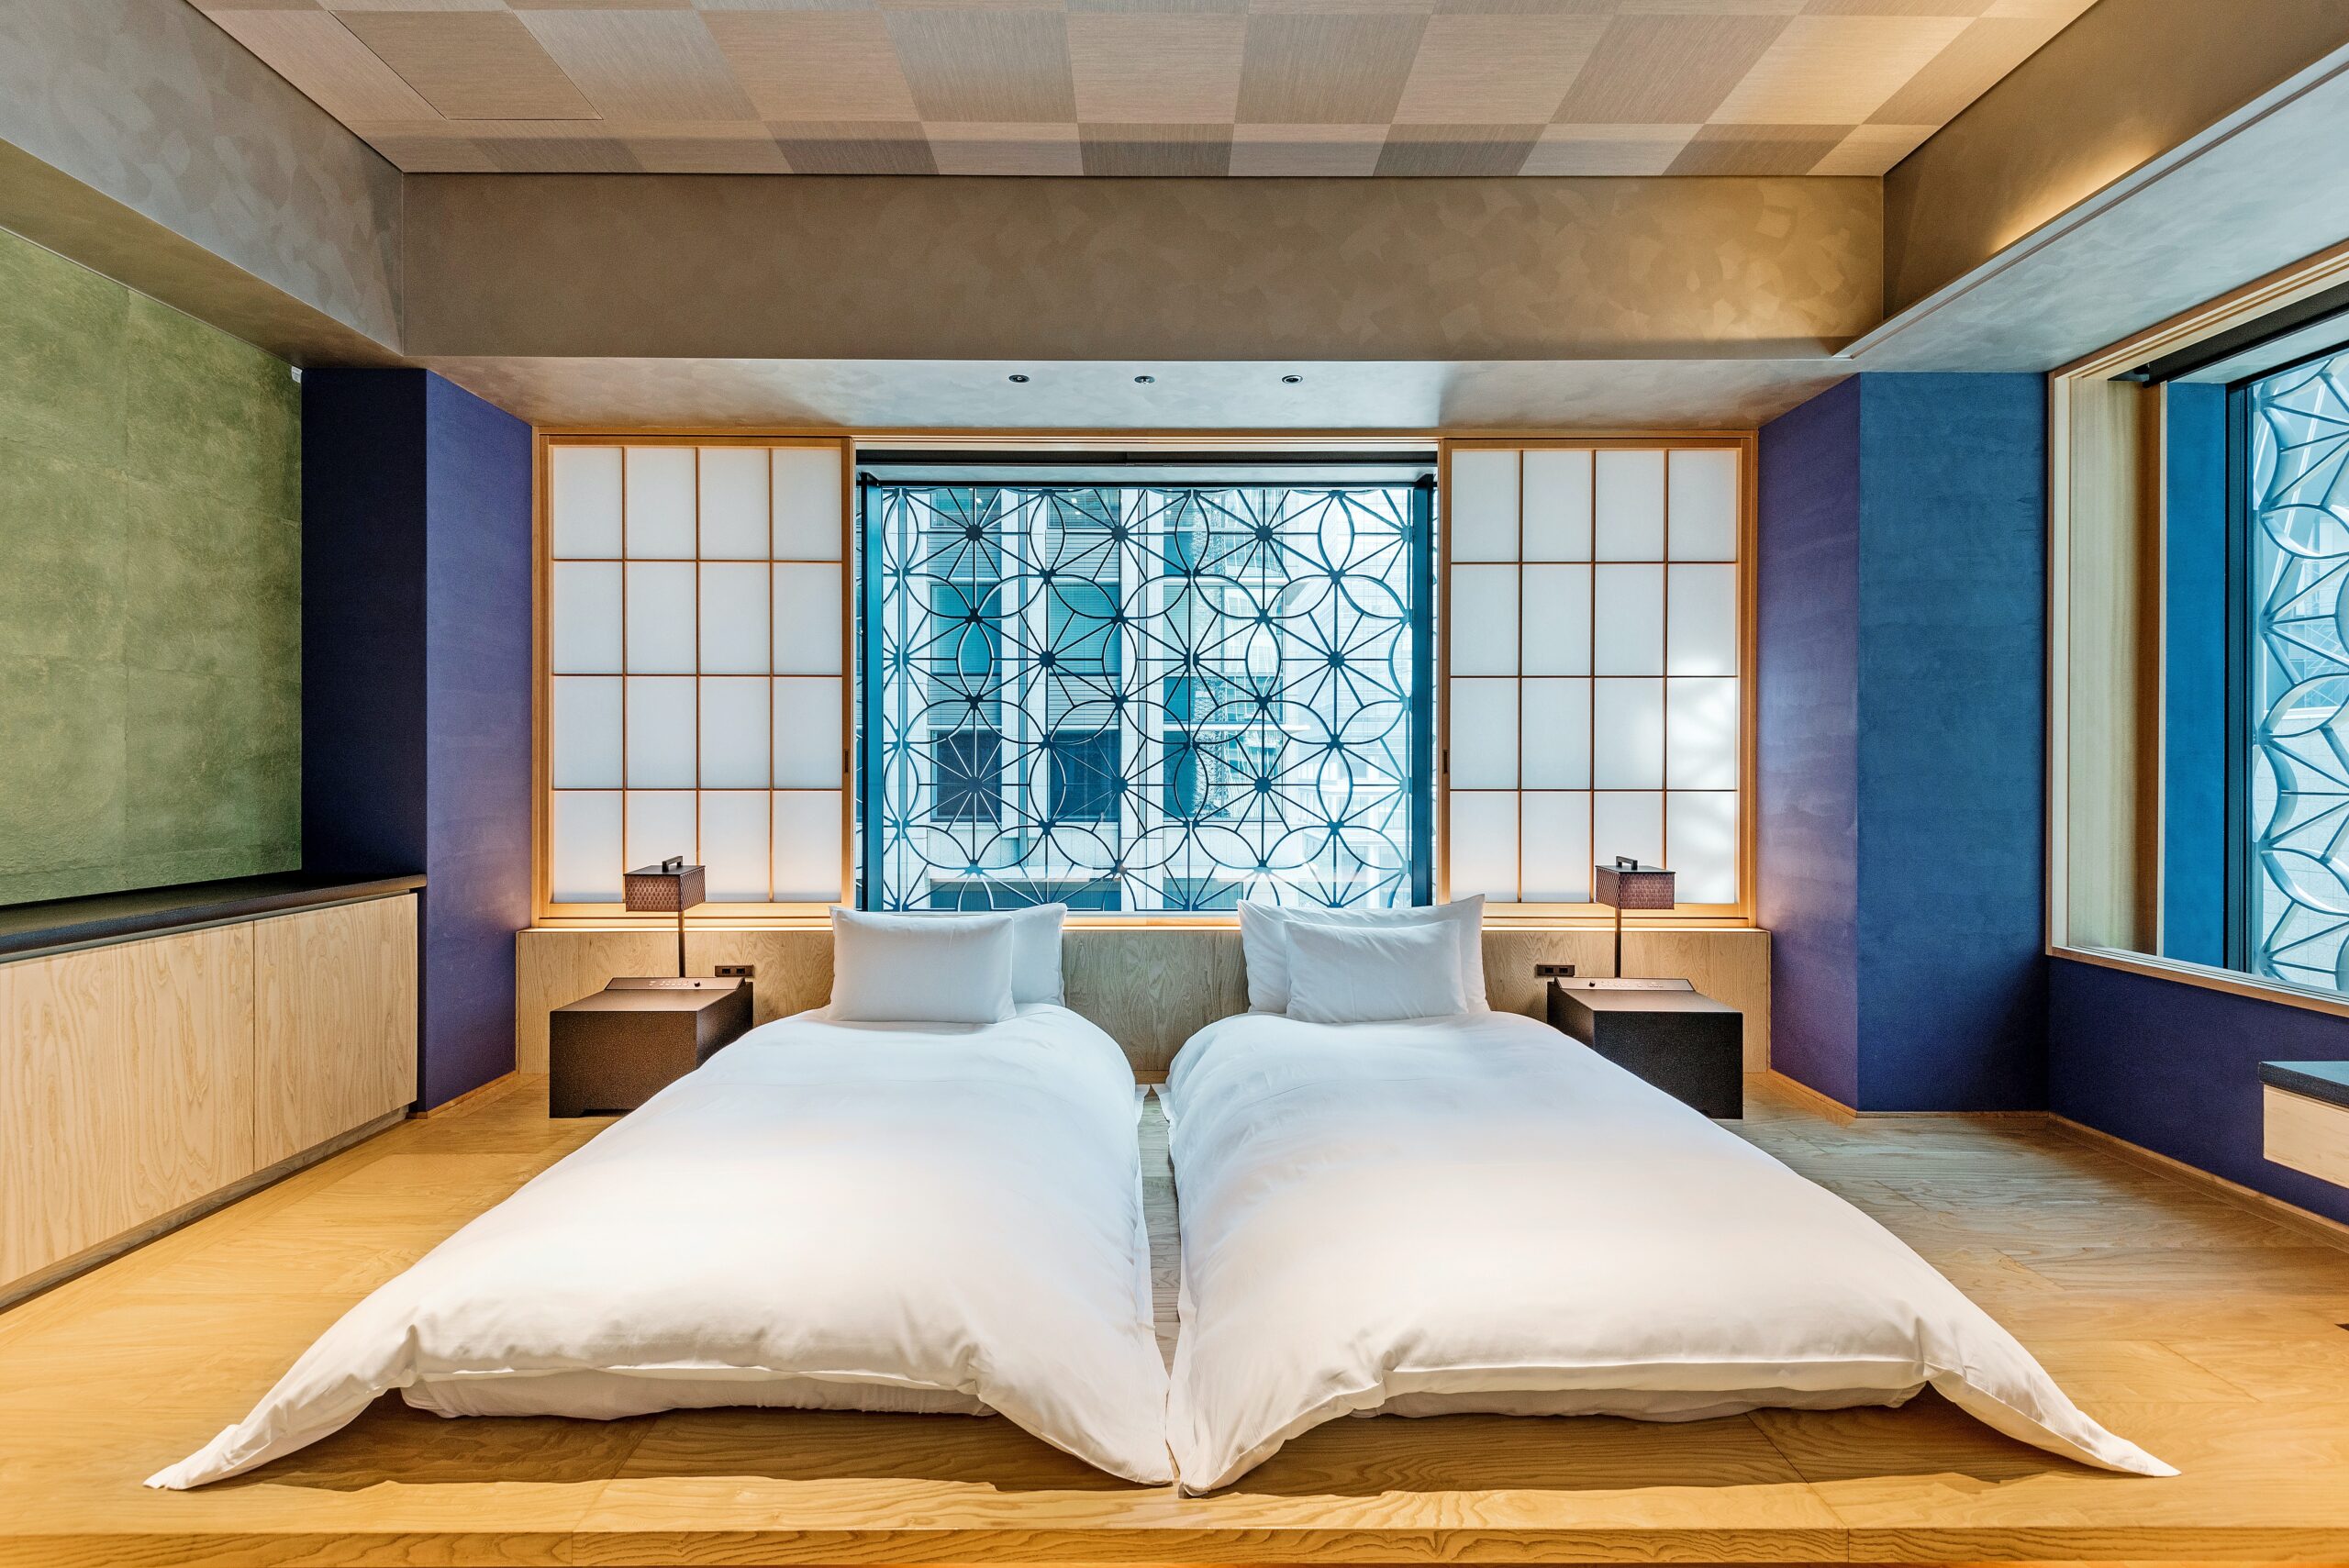 Bed Sizes in Japan - Tokyo Room Finder Blog